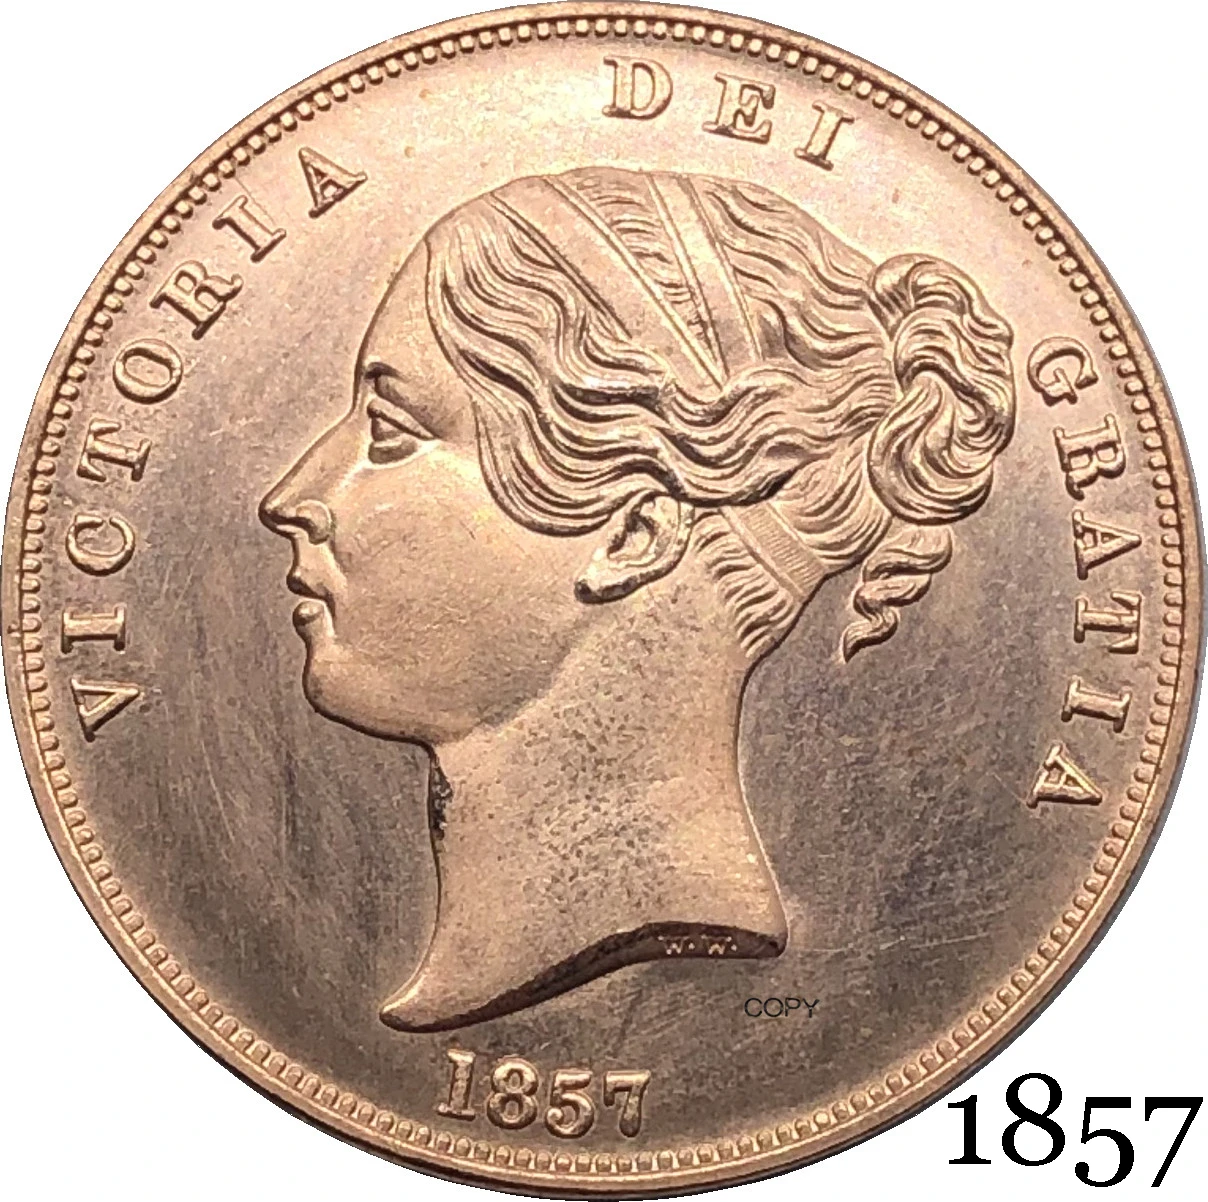 

Соединенное Королевство 1857 Виктория 1 один пенни Королева Великобритании красный Медь копия монеты Великобритании бронзовая монета с порт...